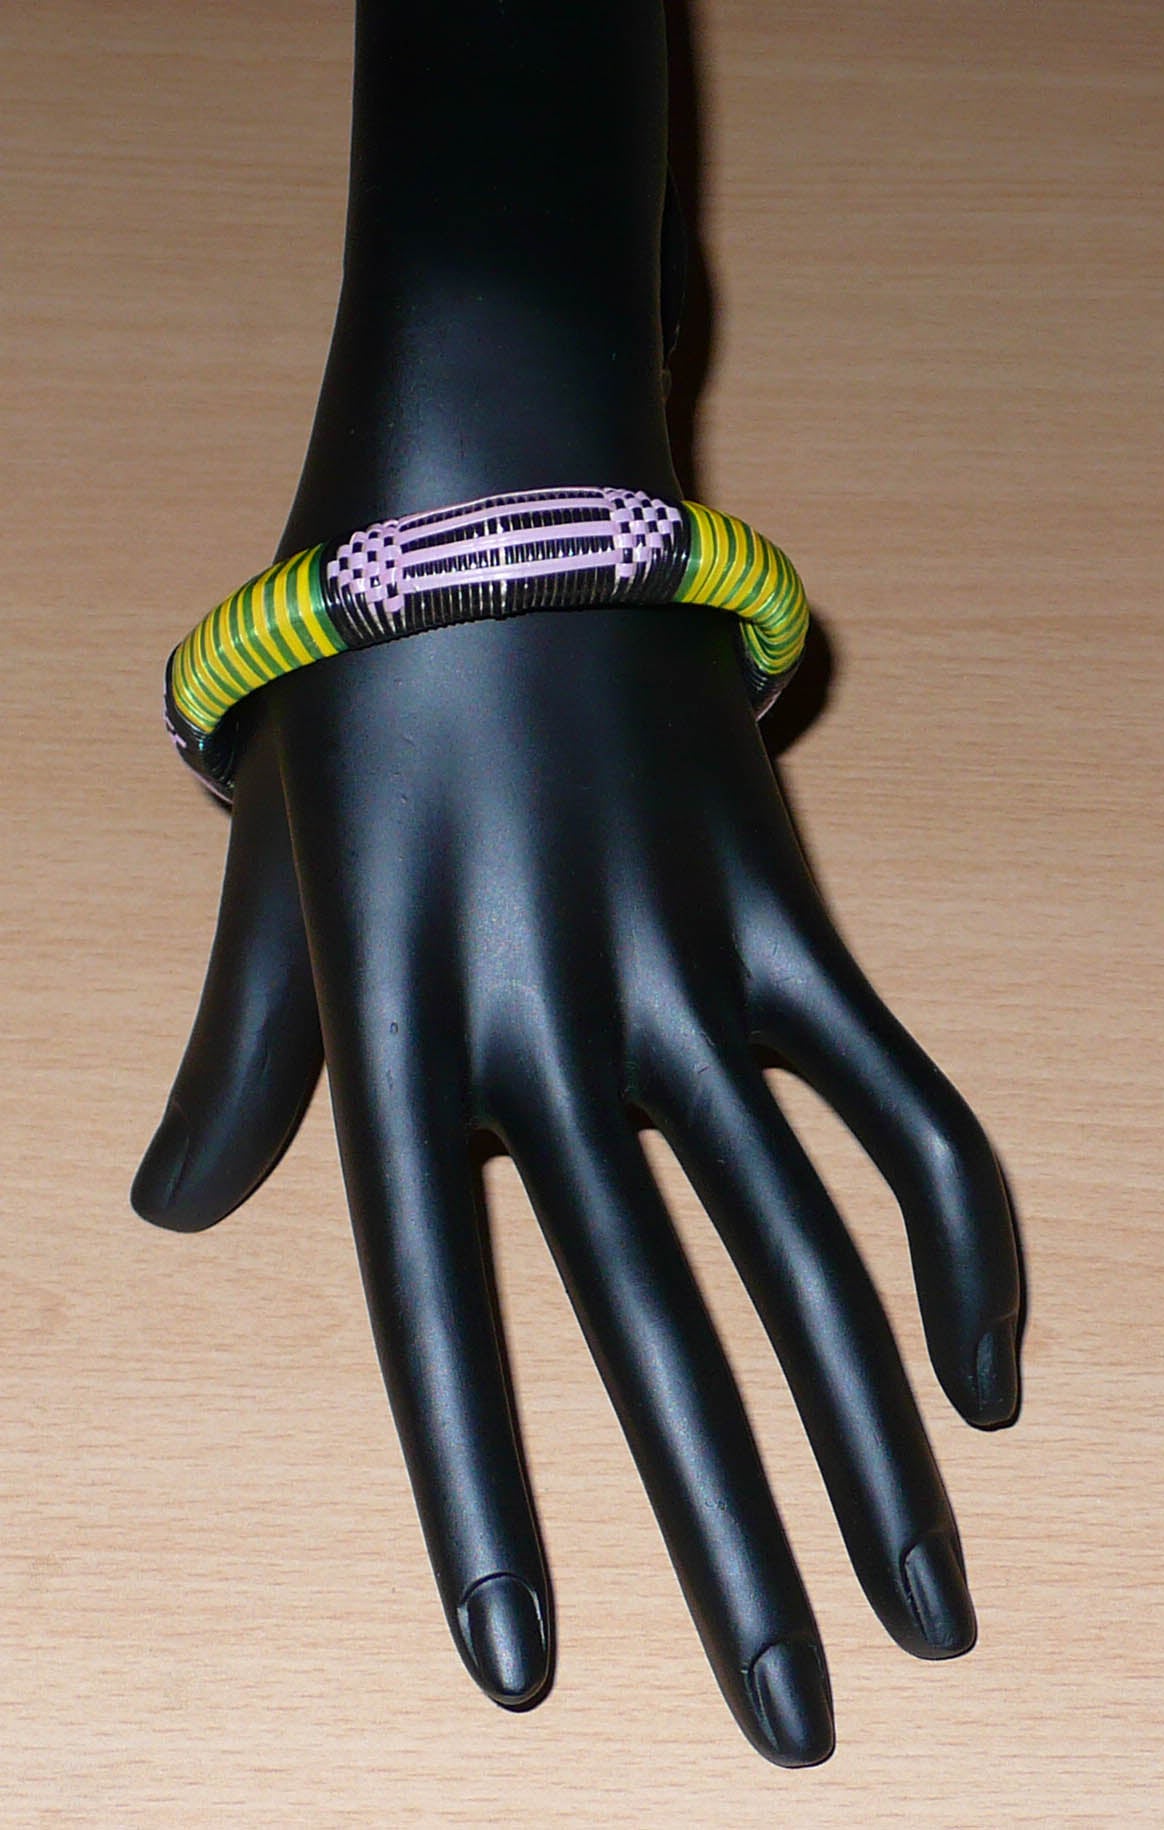 Fabriqué dans une démarche éco-responsable, ce bracelet africain à motifs tribaux est tissé avec de fines bandes de plastique recyclé noir, parme, vert et jaune.  La circonférence interne du bracelet est de 20,5 cm, son diamètre de 6,5 cm et son épaisseur de 1,3 cm.  Il peut être porté par une femme ou par un homme.